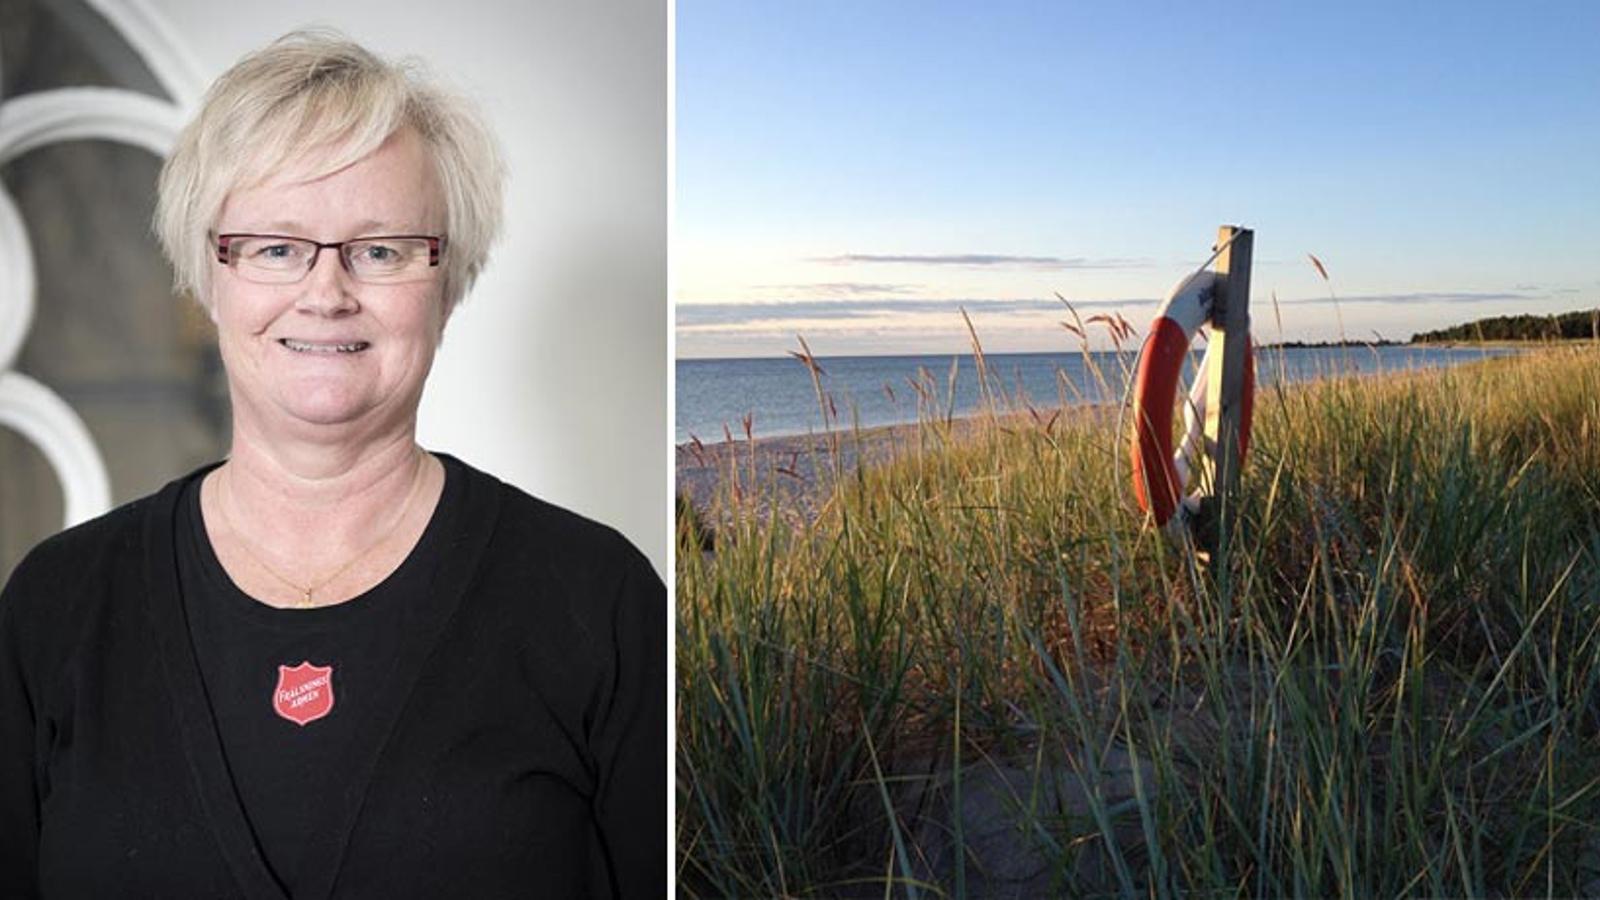 Till vänster: Porträttbild av Anna-Lena Hjerpe. Till höger: En livboj som hänger på en stång vid en sandstrand.